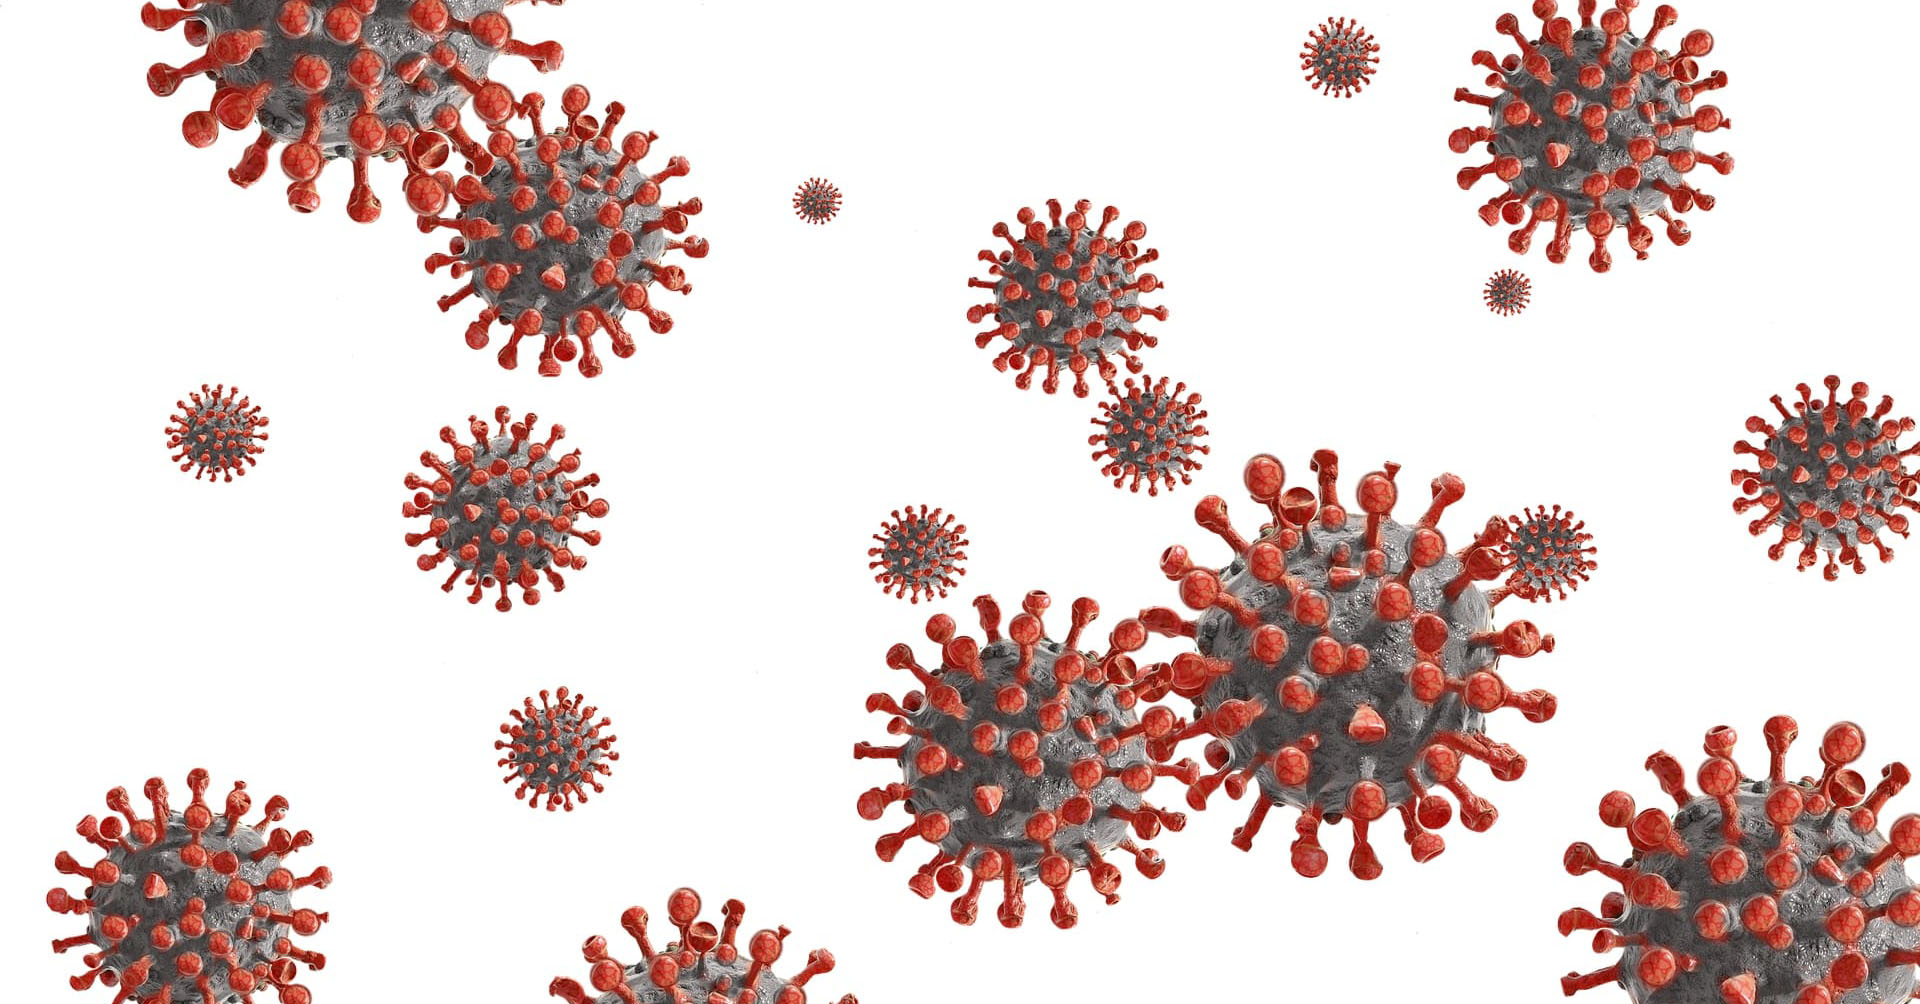 Coronavirus: Keine allgemeine Zertifikatspflicht in der Weiterbildung vorgesehen